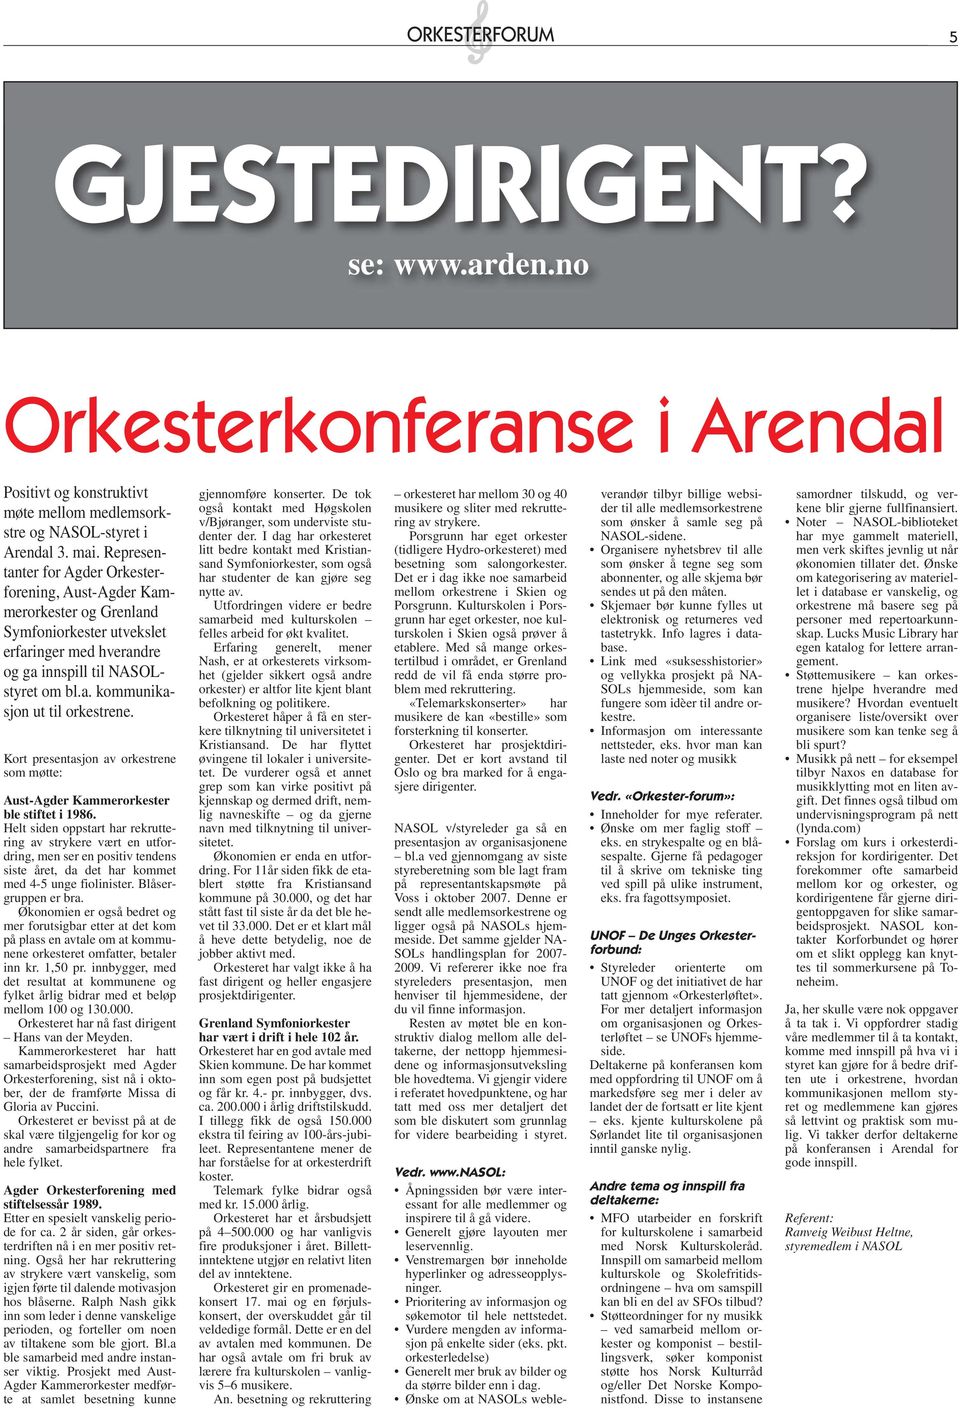 Kort presentasjon av orkestrene som møtte: Aust-Agder Kammerorkester ble stiftet i 1986.